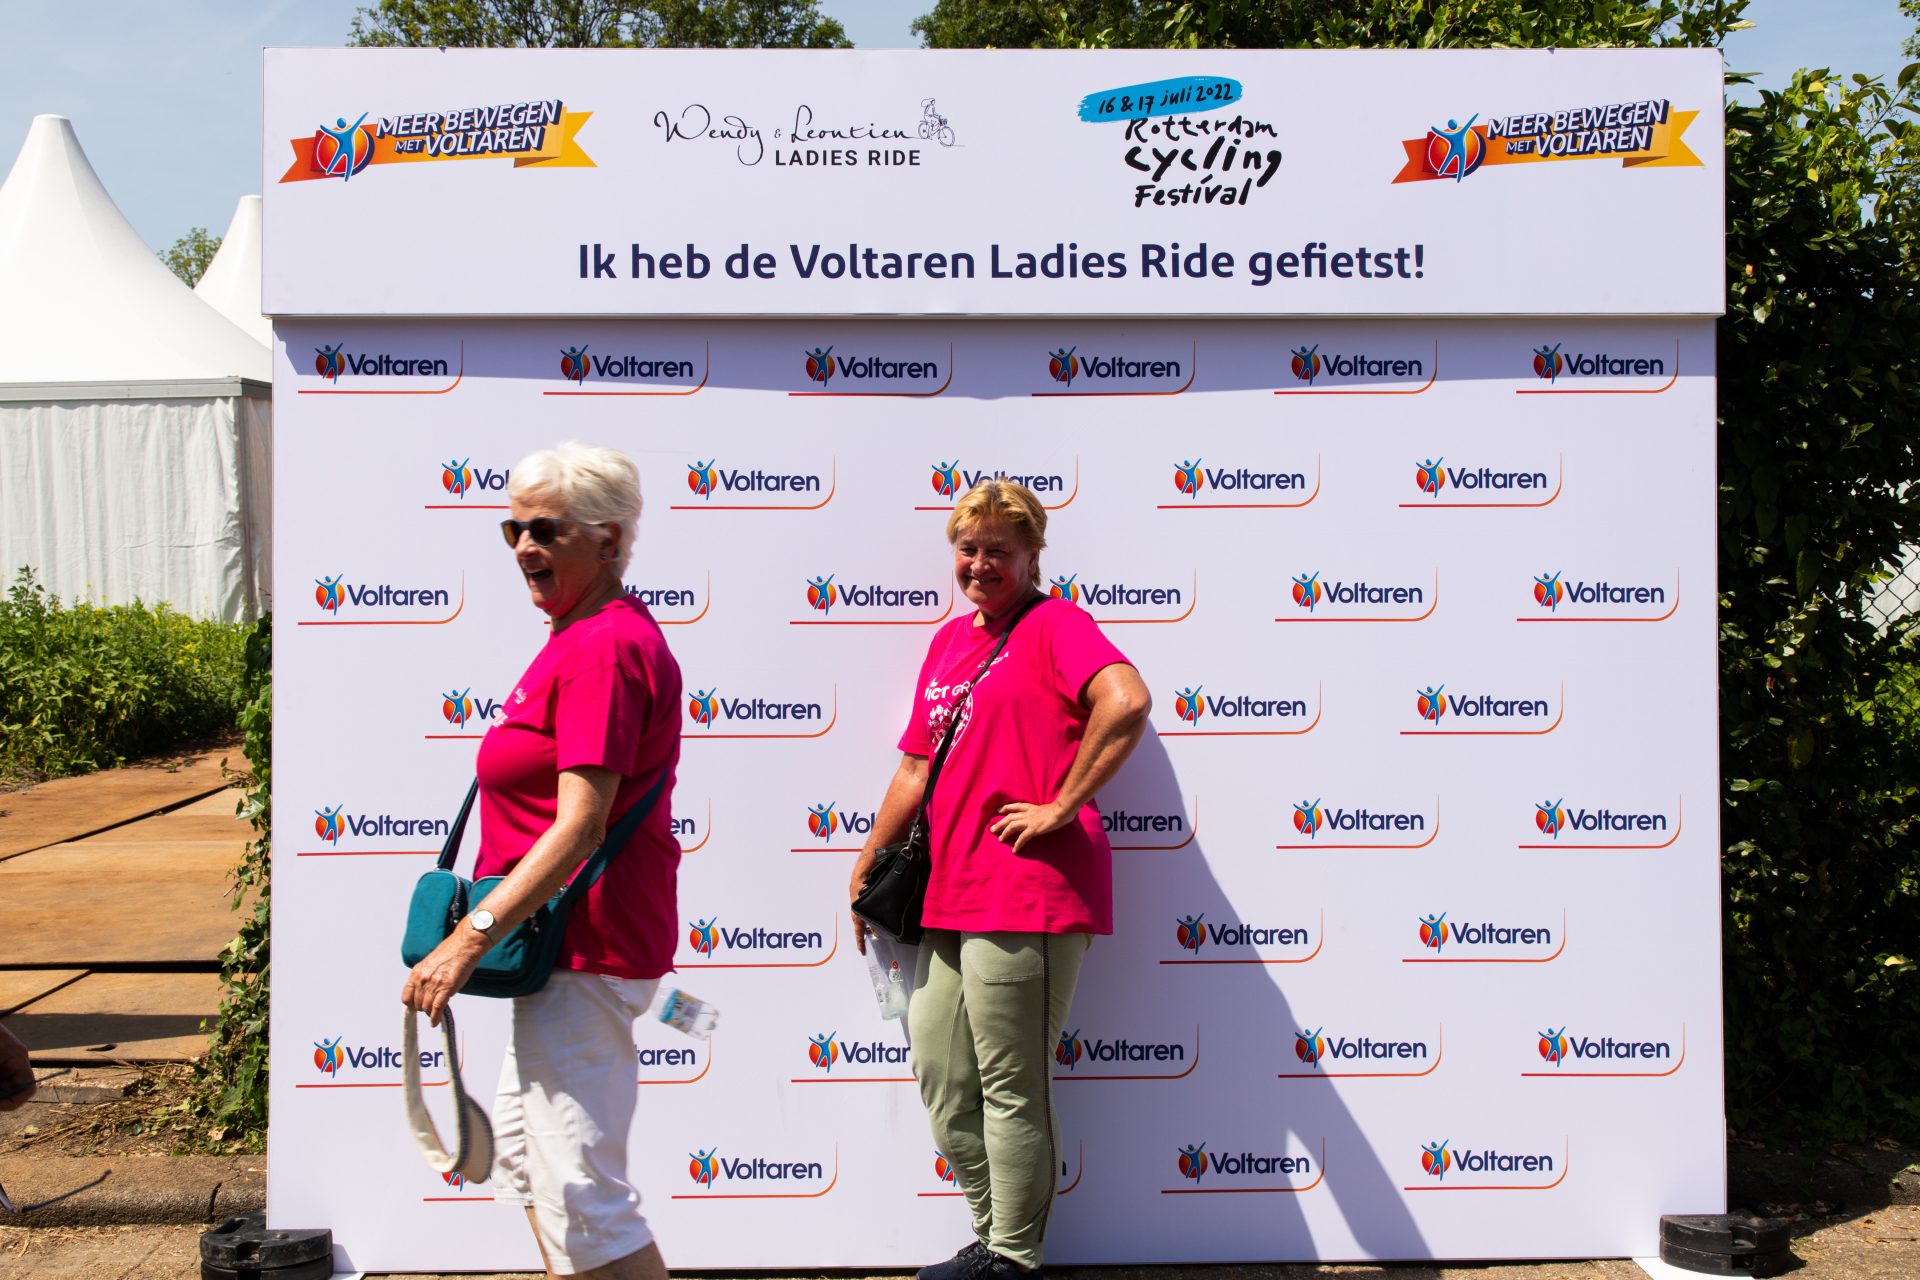 LADIES RIDE VOLTAREN BACKGROUND PHOTOS 49 of 64 Ladies Ride 2022